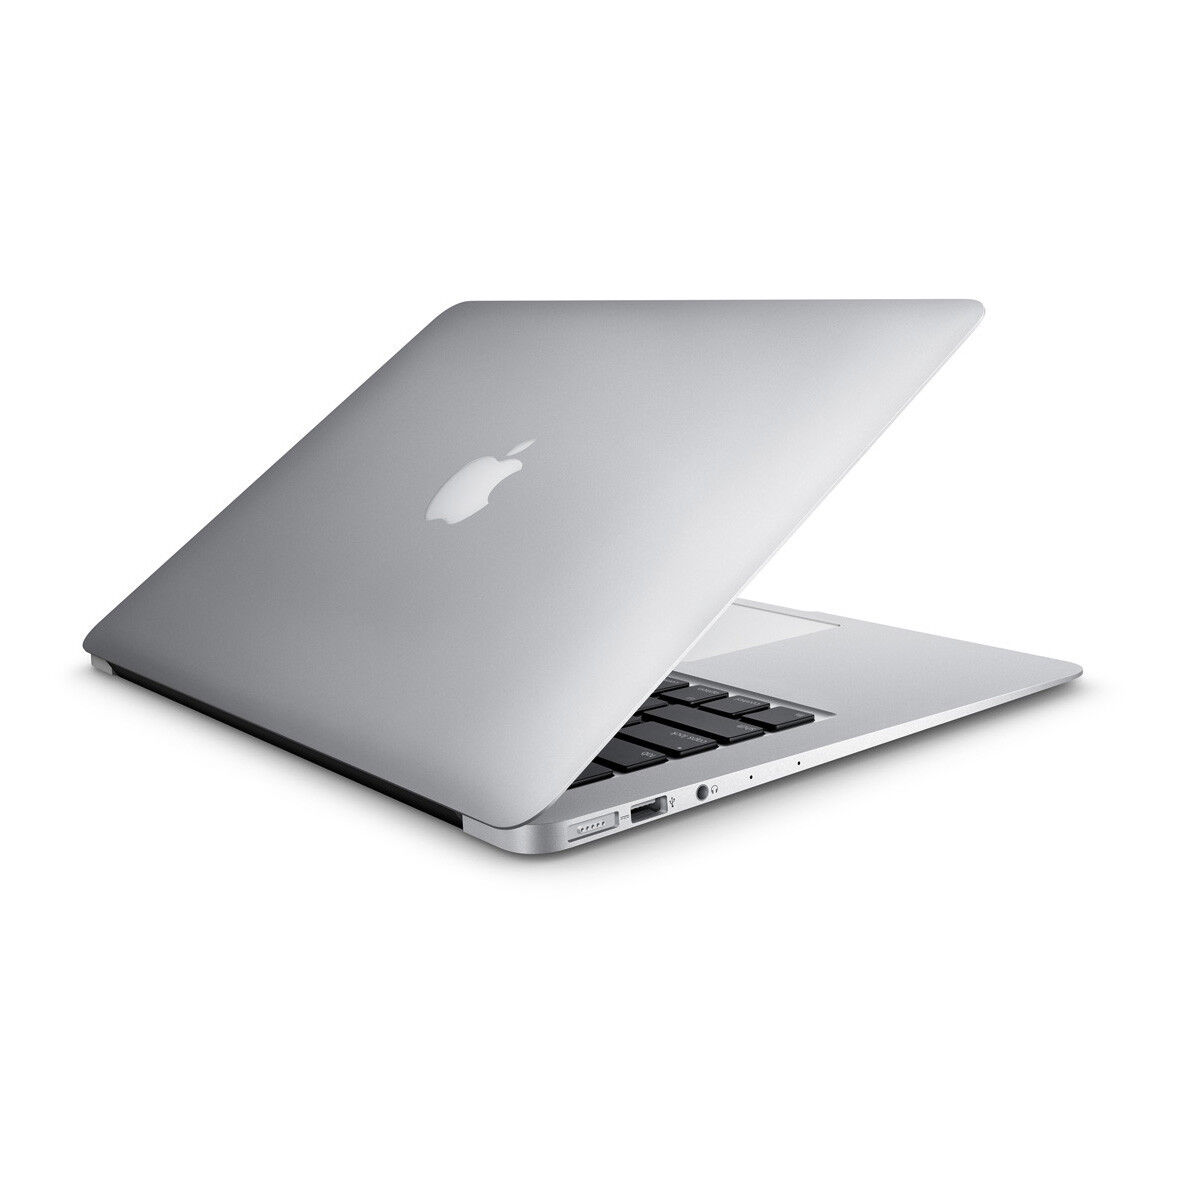 Apple MacBook Air 11.6" LED Laptop 1.6GHz Intel i5 4GB 256GB SSD MJVM2LLA 2015 Apple MJVM2LL/A - фотография #3